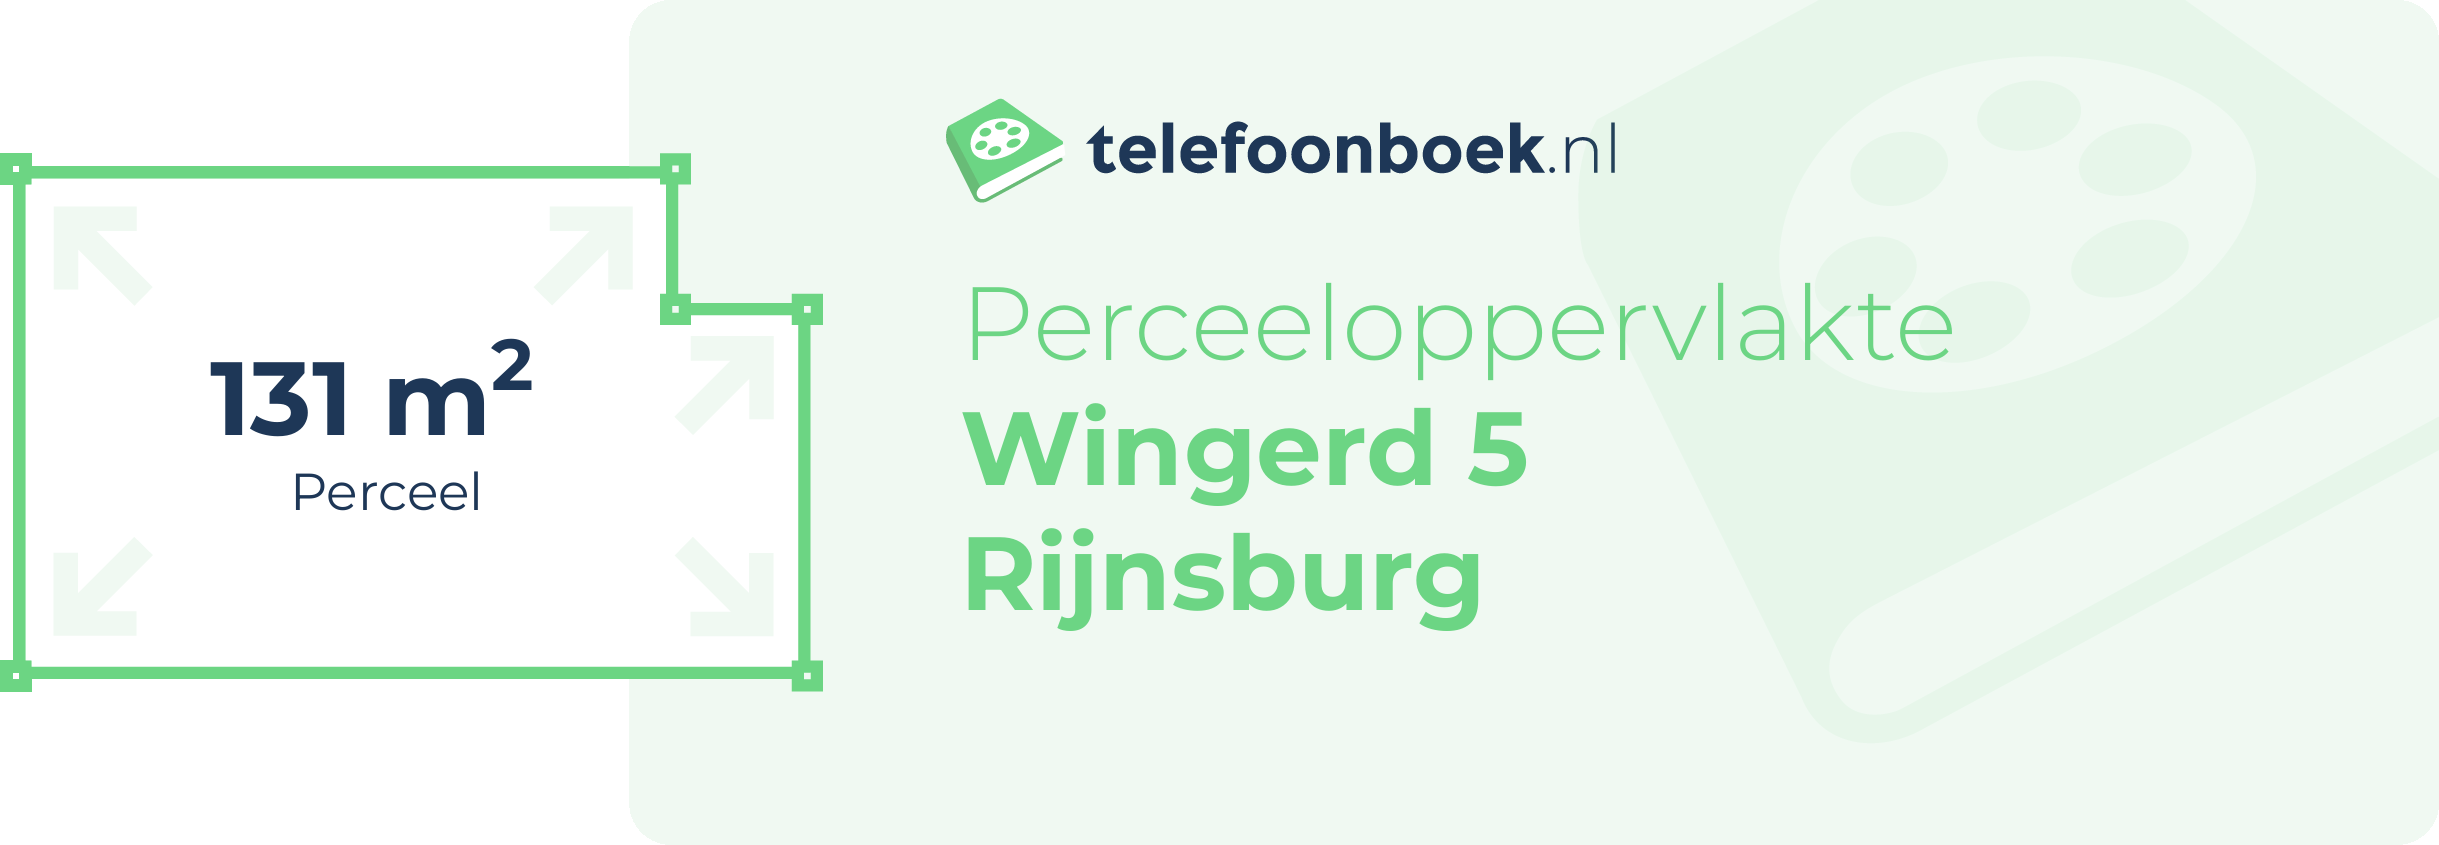 Perceeloppervlakte Wingerd 5 Rijnsburg